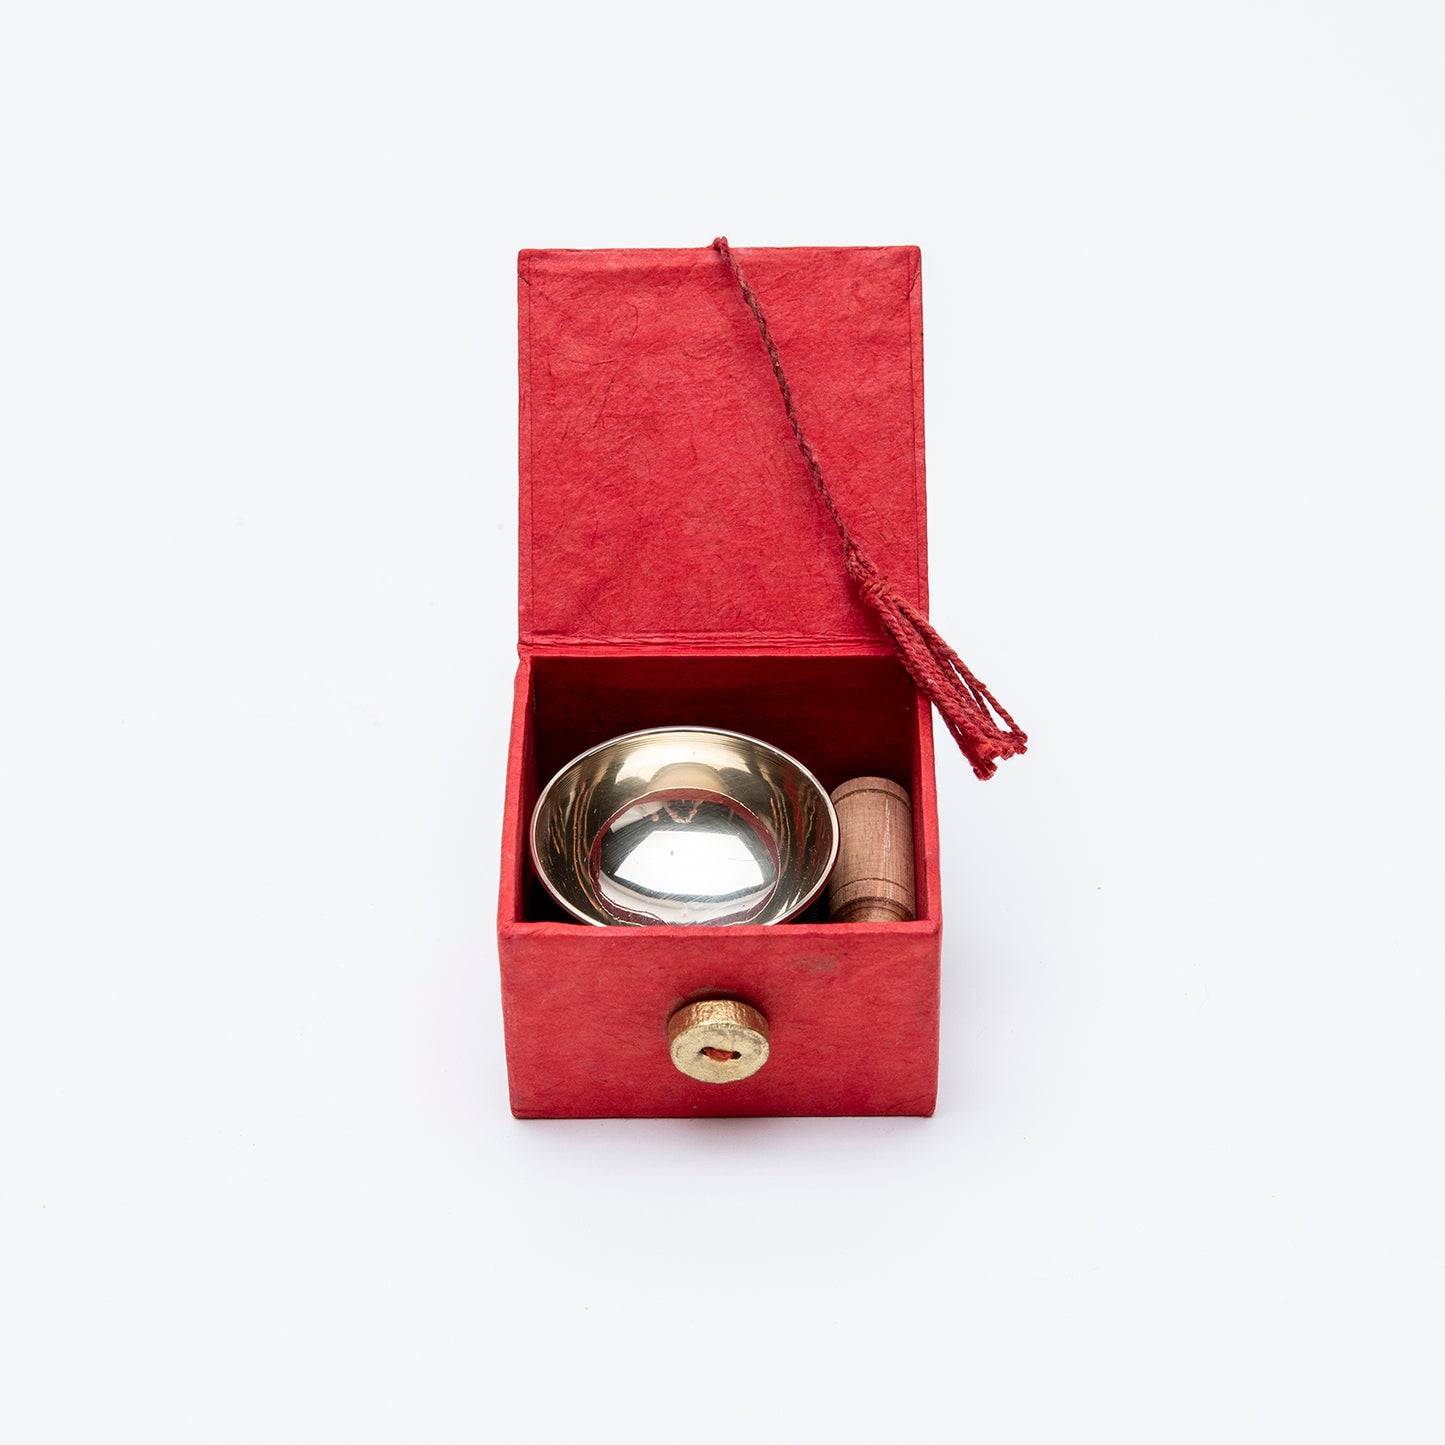 Miniature Singing Bowl Box Set - Gold Bodhi